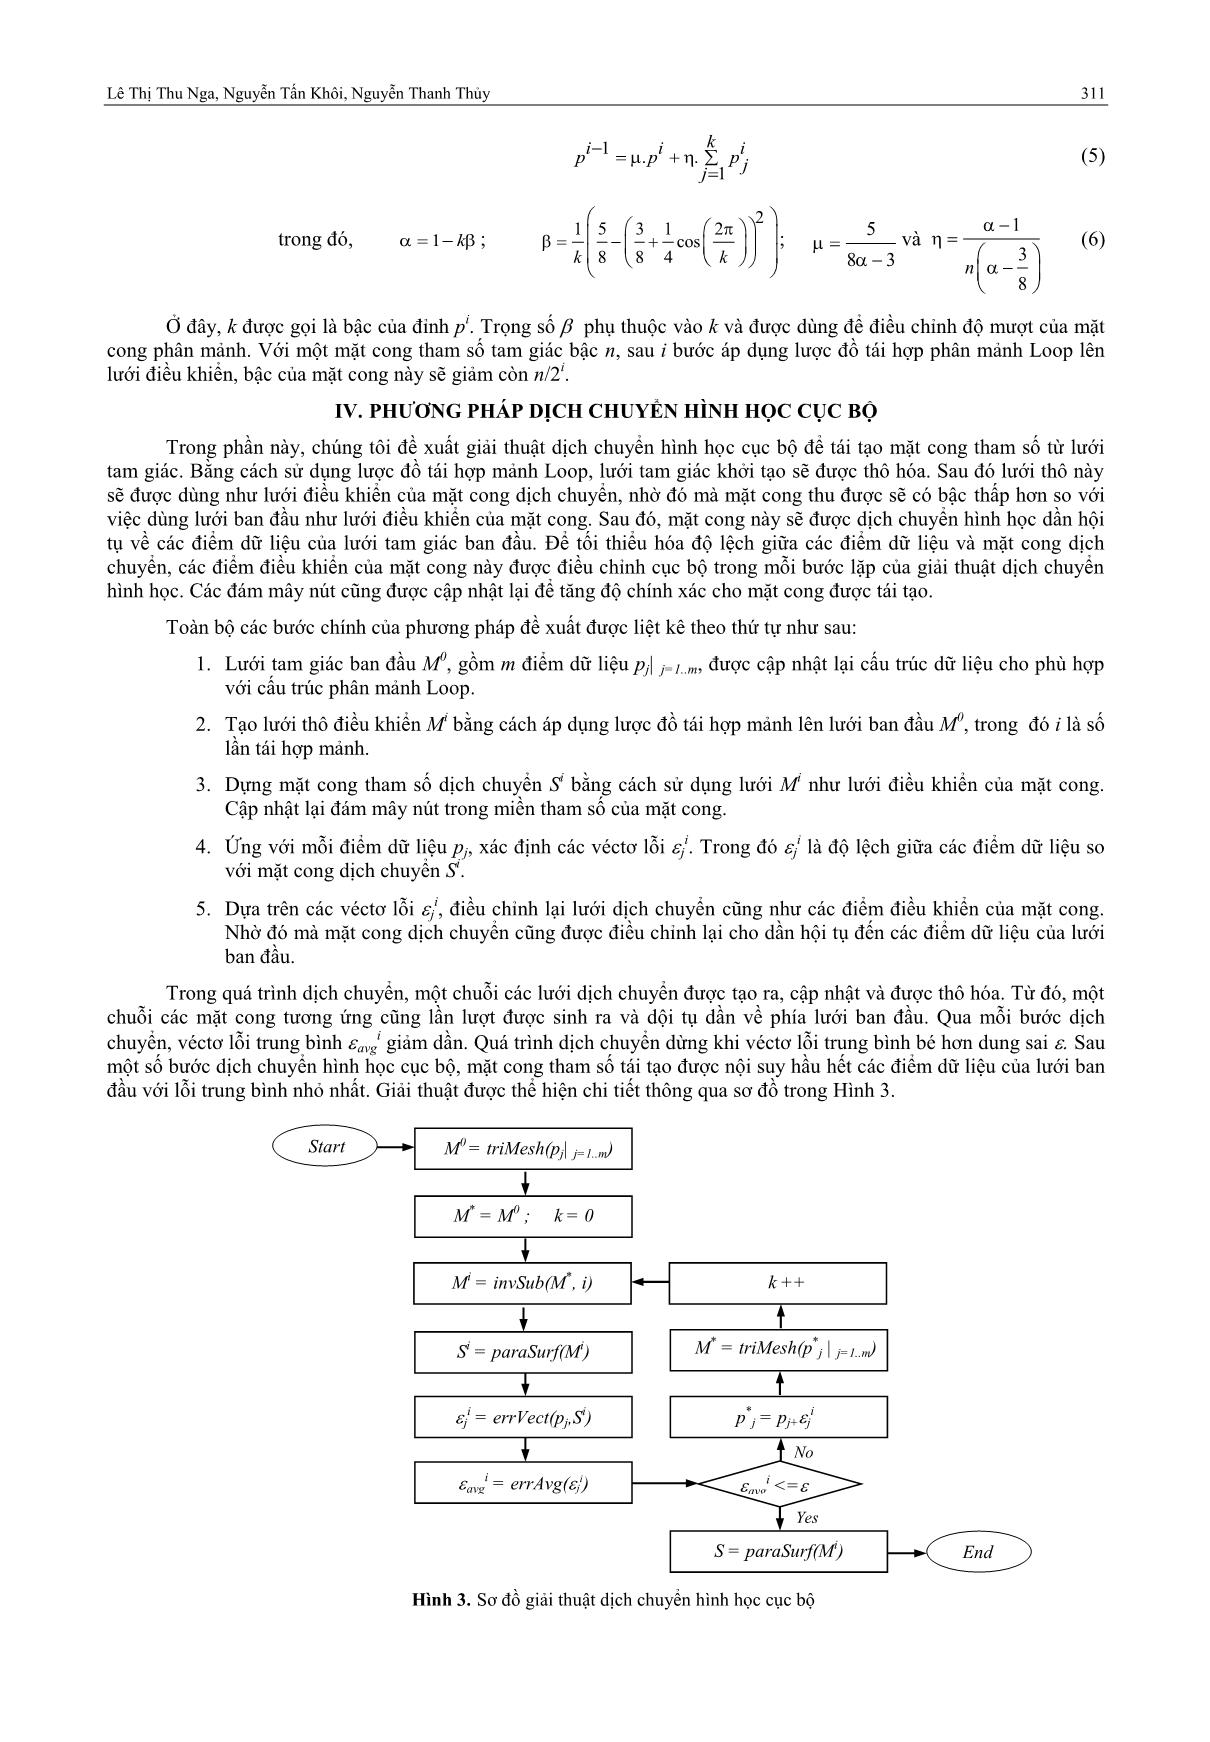 Mô hình hóa mặt cong tham số bậc thấp từ lưới tam giác dựa trên phương pháp dịch chuyển hình học cục bộ trang 4